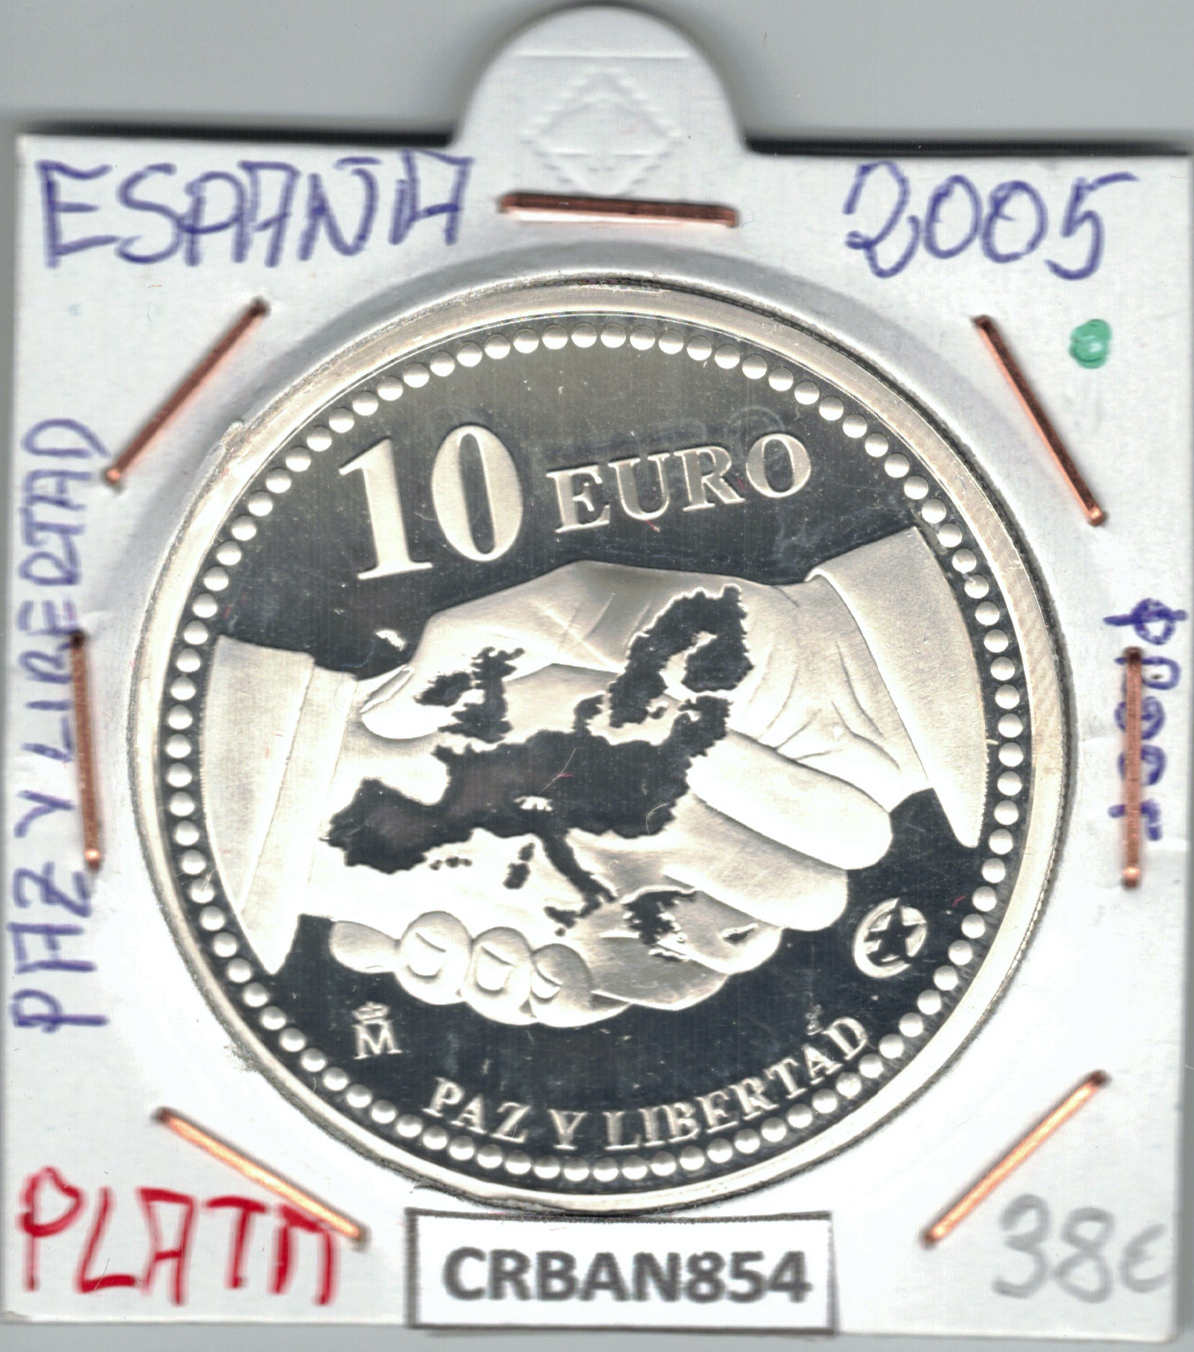 CRBAN854 MONEDA ESPAÑA 10 EURO PAZ Y LIBERTAD PLATA PROOF 2005